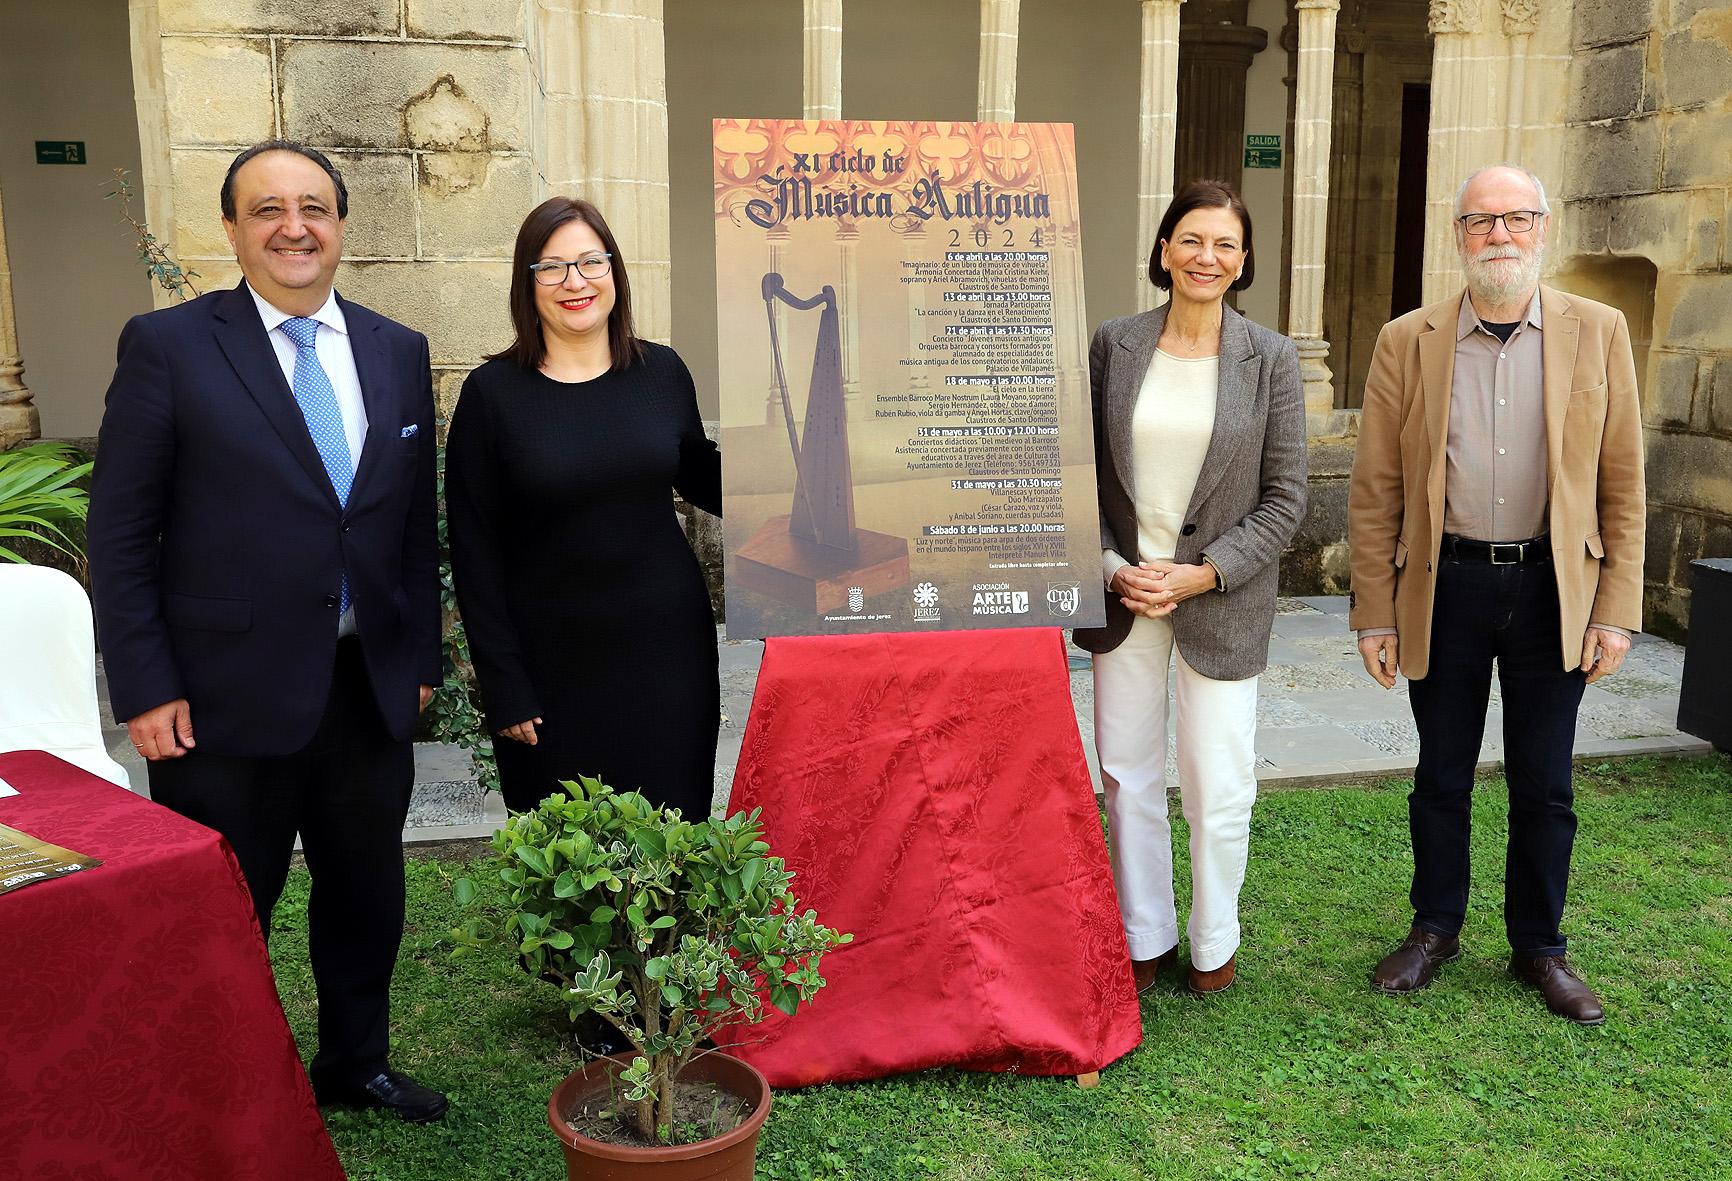 El XI Ciclo de Música Antigua, del 6 de abril al 8 de junio en Los Claustros de Santo Domingo